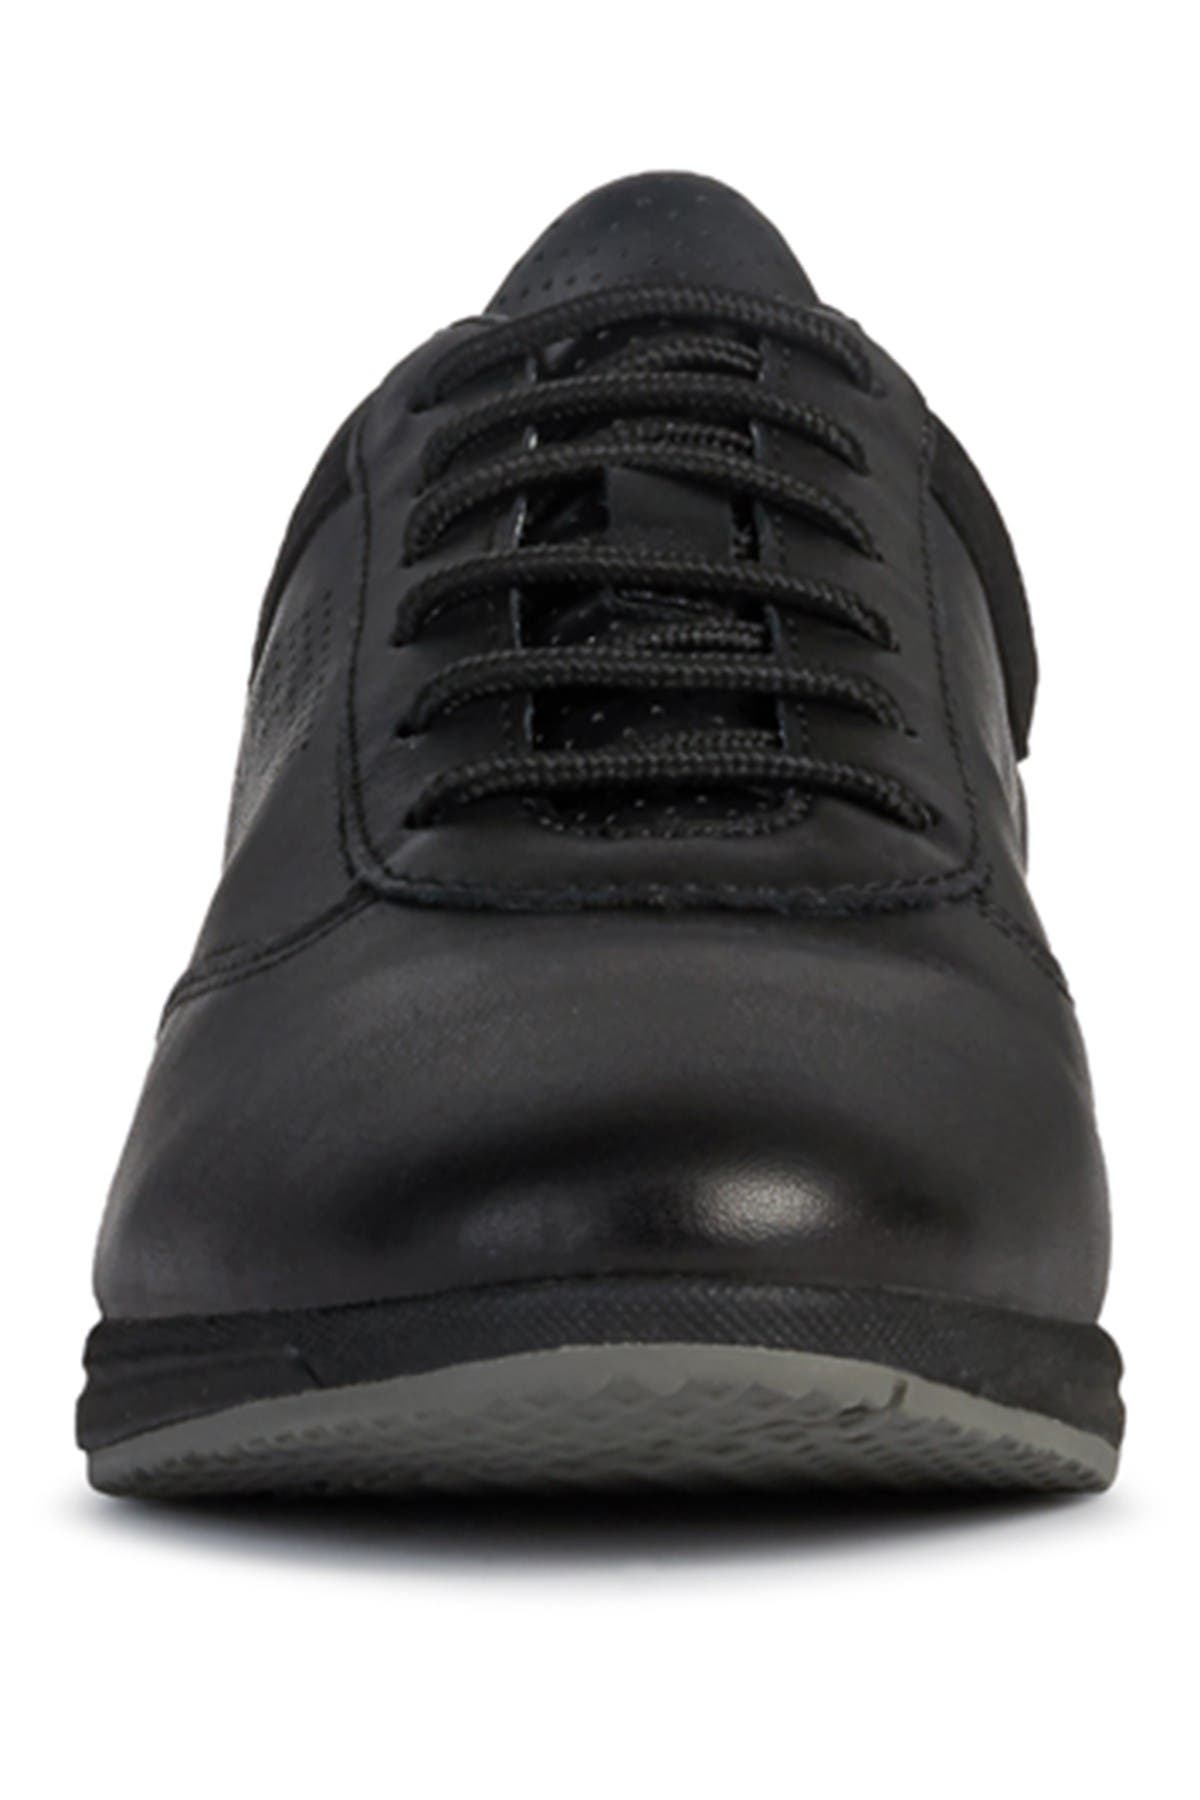 Geox Wavery Leather Sneaker In Black